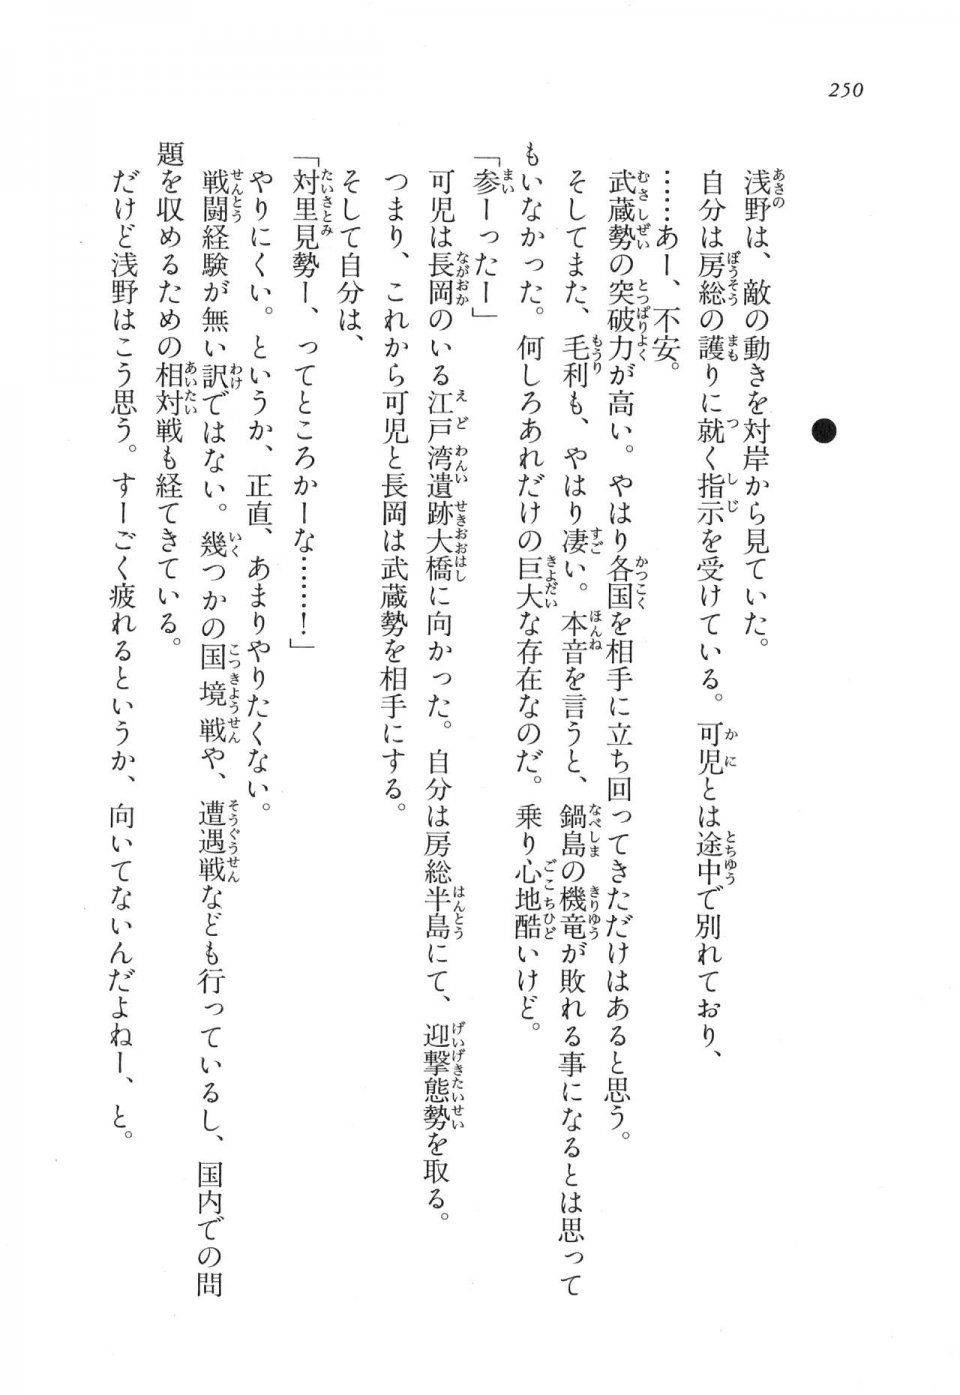 Kyoukai Senjou no Horizon LN Vol 17(7B) - Photo #250